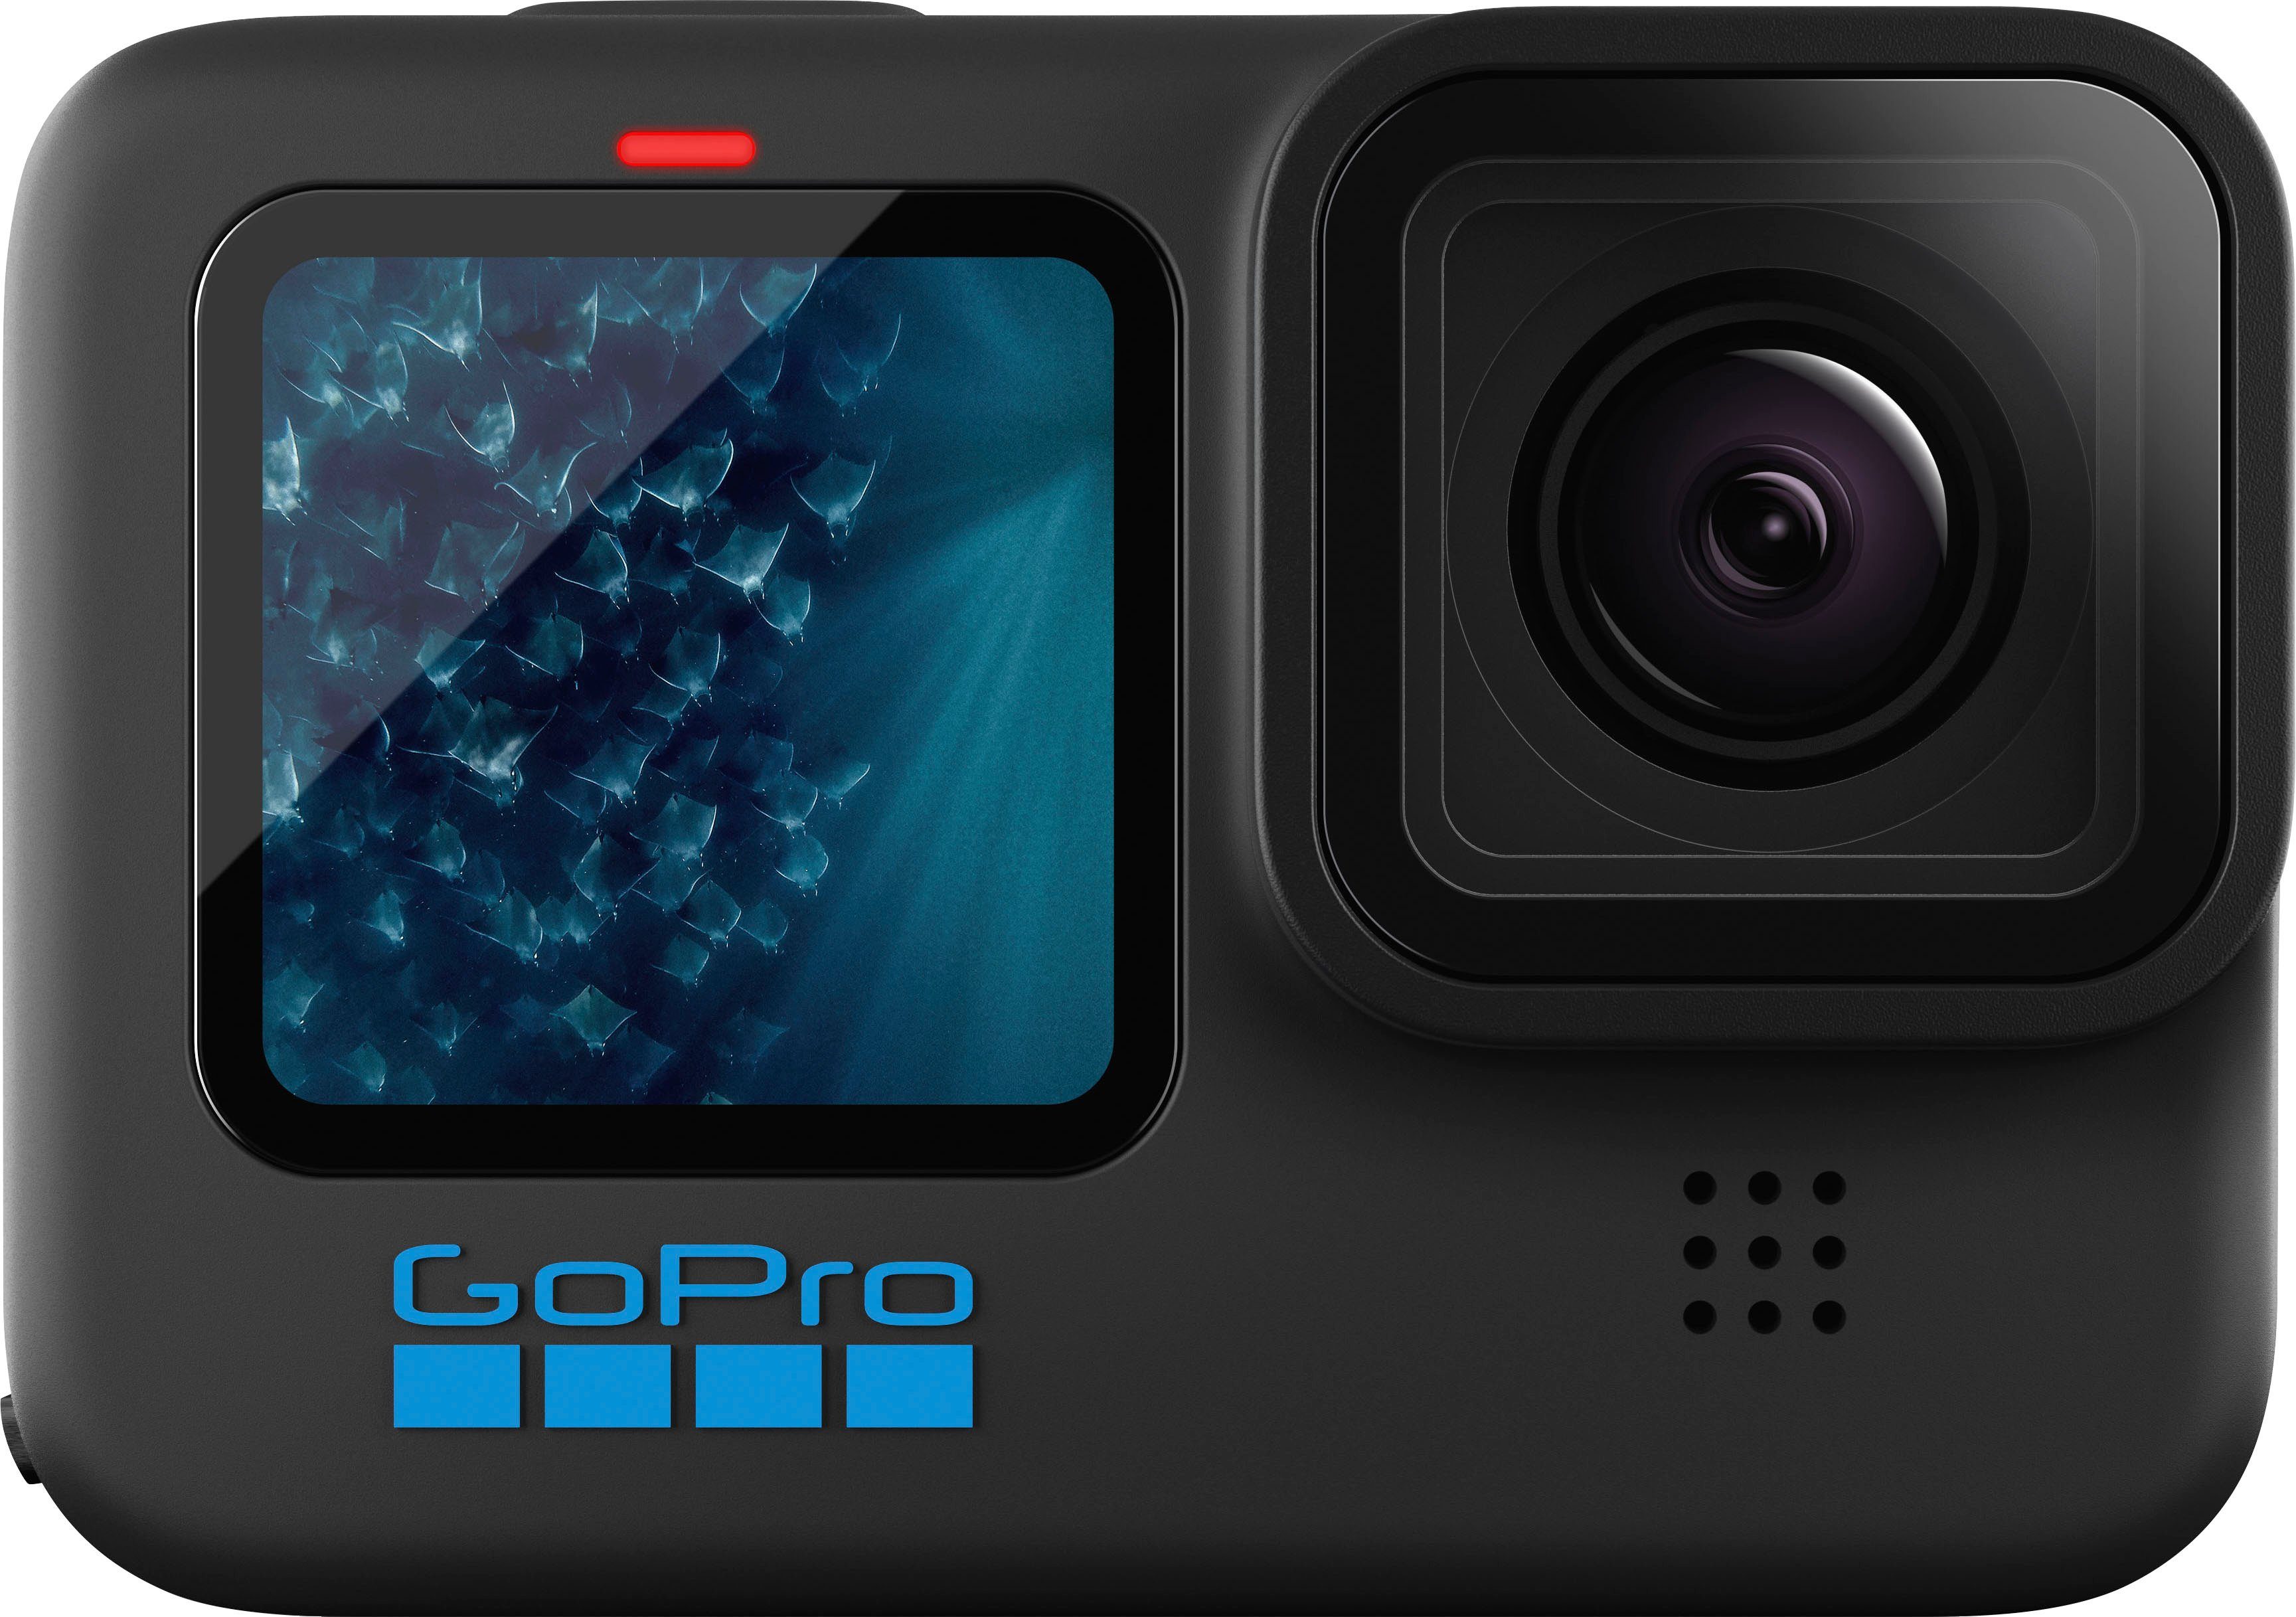 Black (Wi-Fi) HERO11 Camcorder (Bluetooth, WLAN GoPro